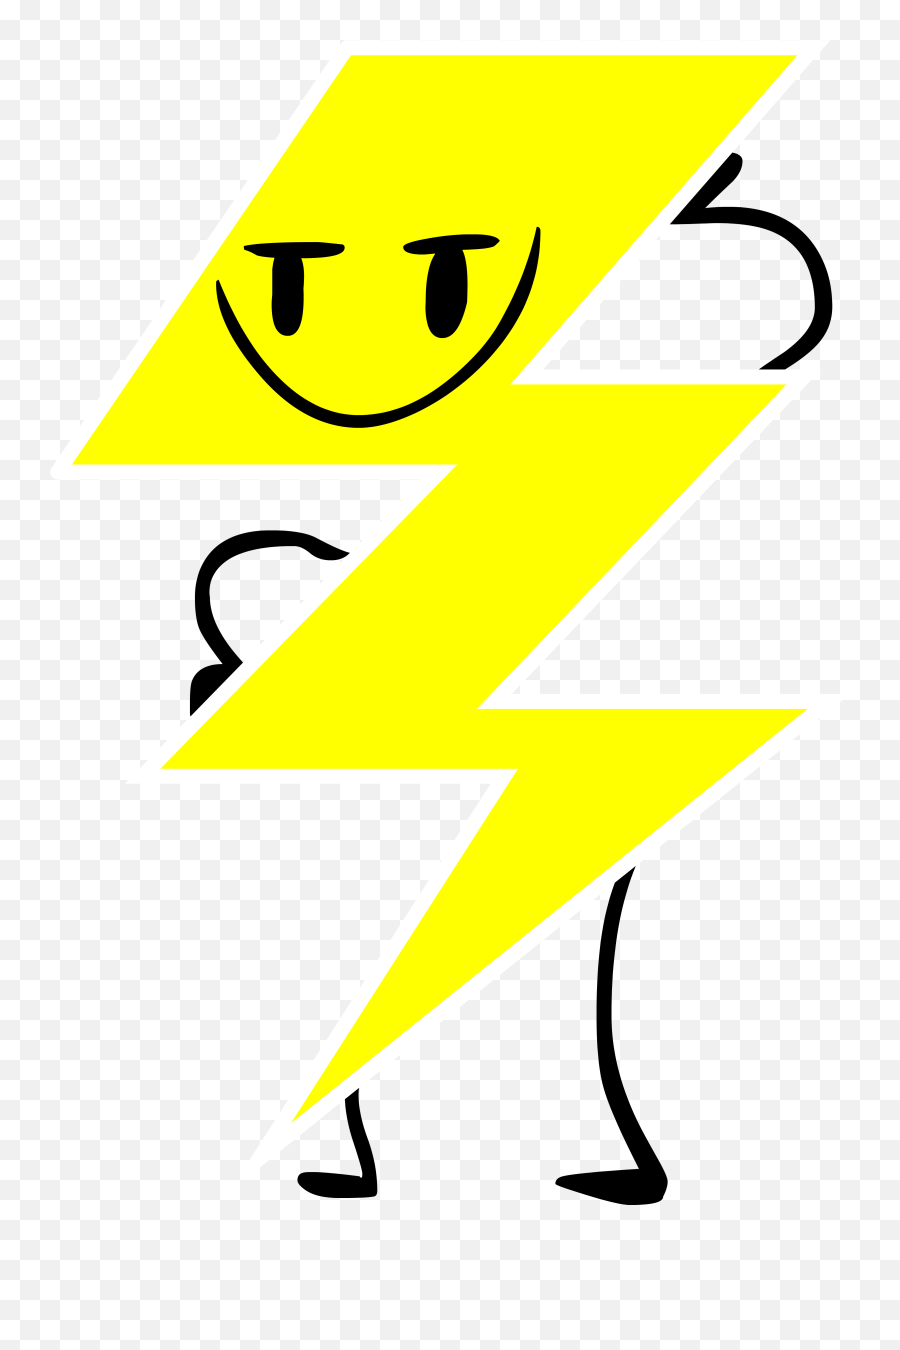 Lightning - Dot Emoji,Blue Box With White Lightning Bolt Emoji